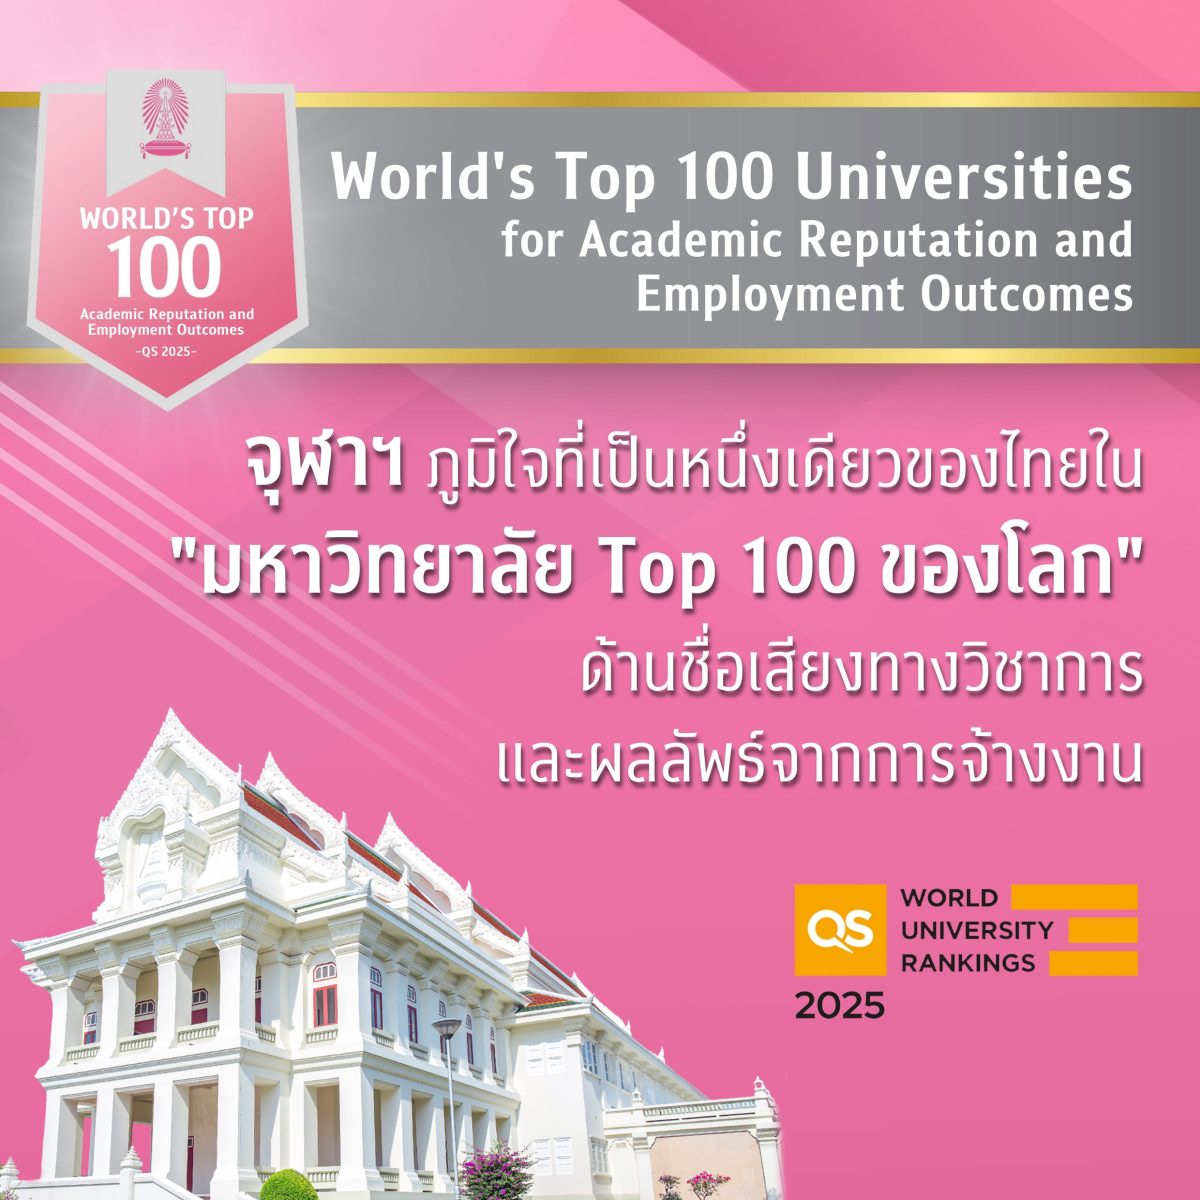 จุฬาฯ โดดเด่นครองที่ 1 มหาวิทยาลัยไทยและเป็นหนึ่งเดียวของไทยใน Top 100 ของโลกด้านชื่อเสียงทางวิชาการและผลลัพธ์จากการจ้างงาน ใน QS World University Rankings